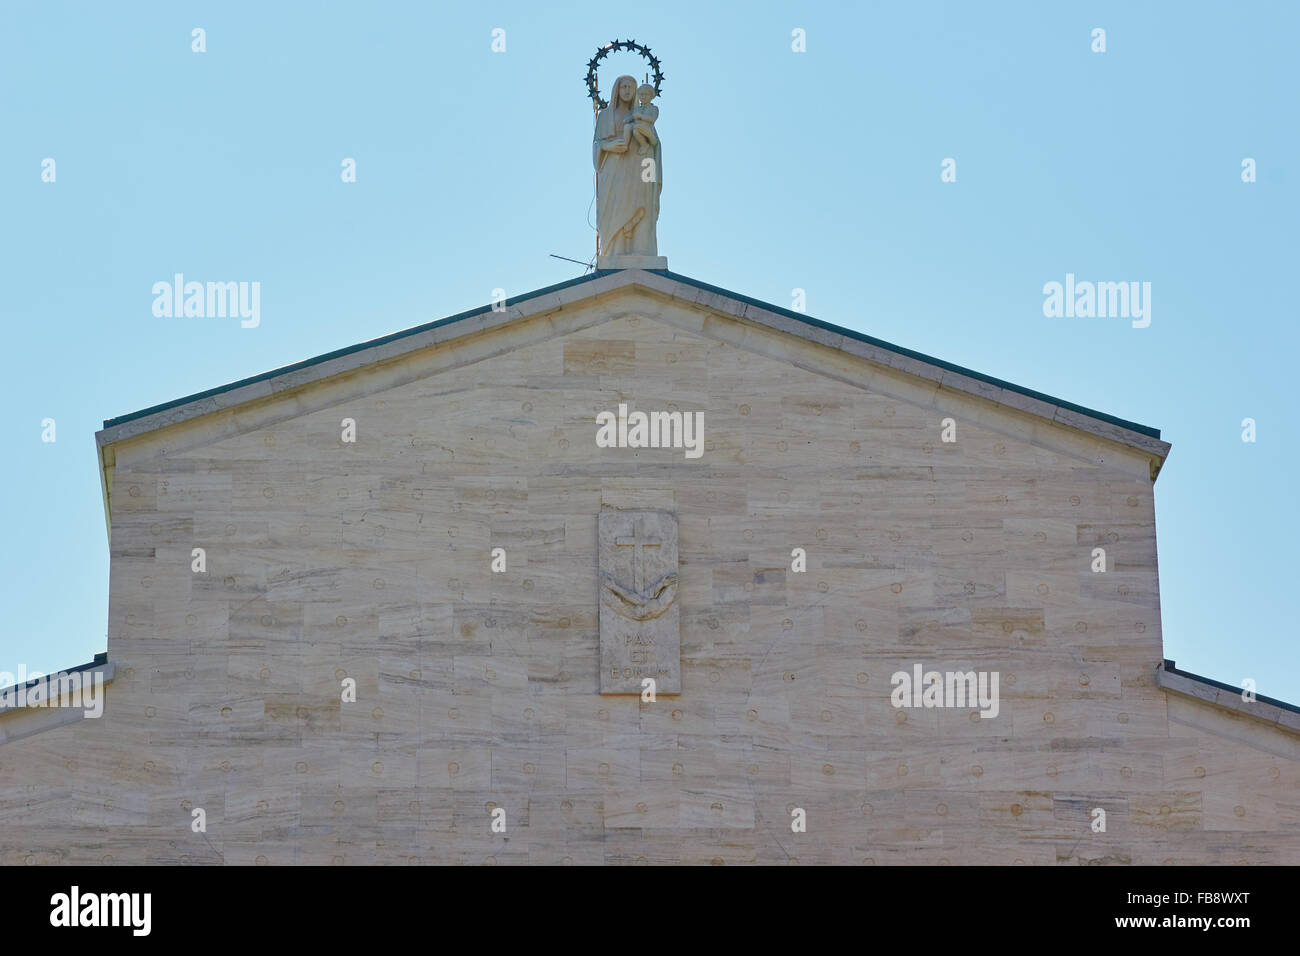 Statue der Jungfrau Maria mit Kind auf Dach der Chiesa Santa Maria Della Grazie Kirche San Giovanni Rotondo Apulien Puglia Italien Stockfoto